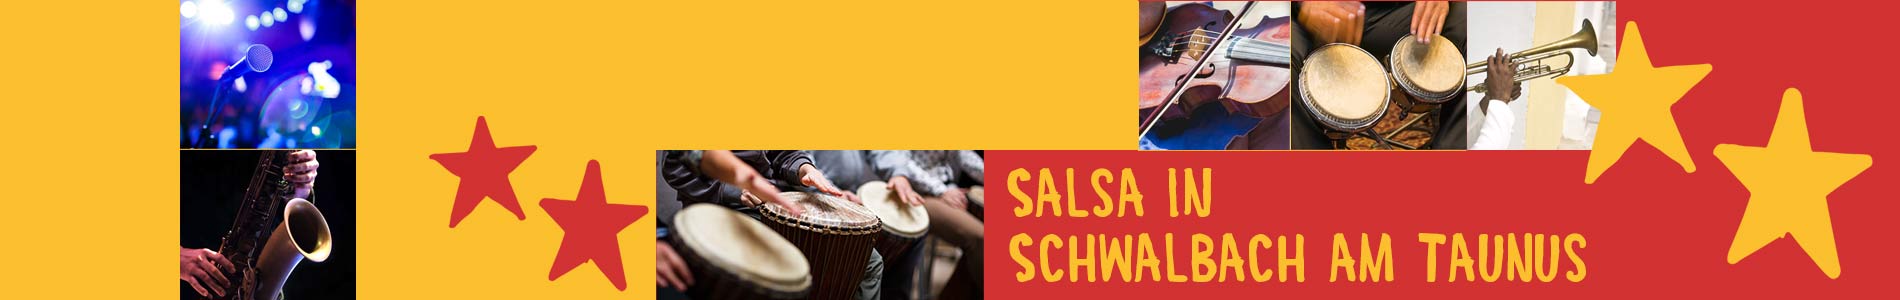 Salsa in Schwalbach – Salsa lernen und tanzen, Tanzkurse, Partys, Veranstaltungen